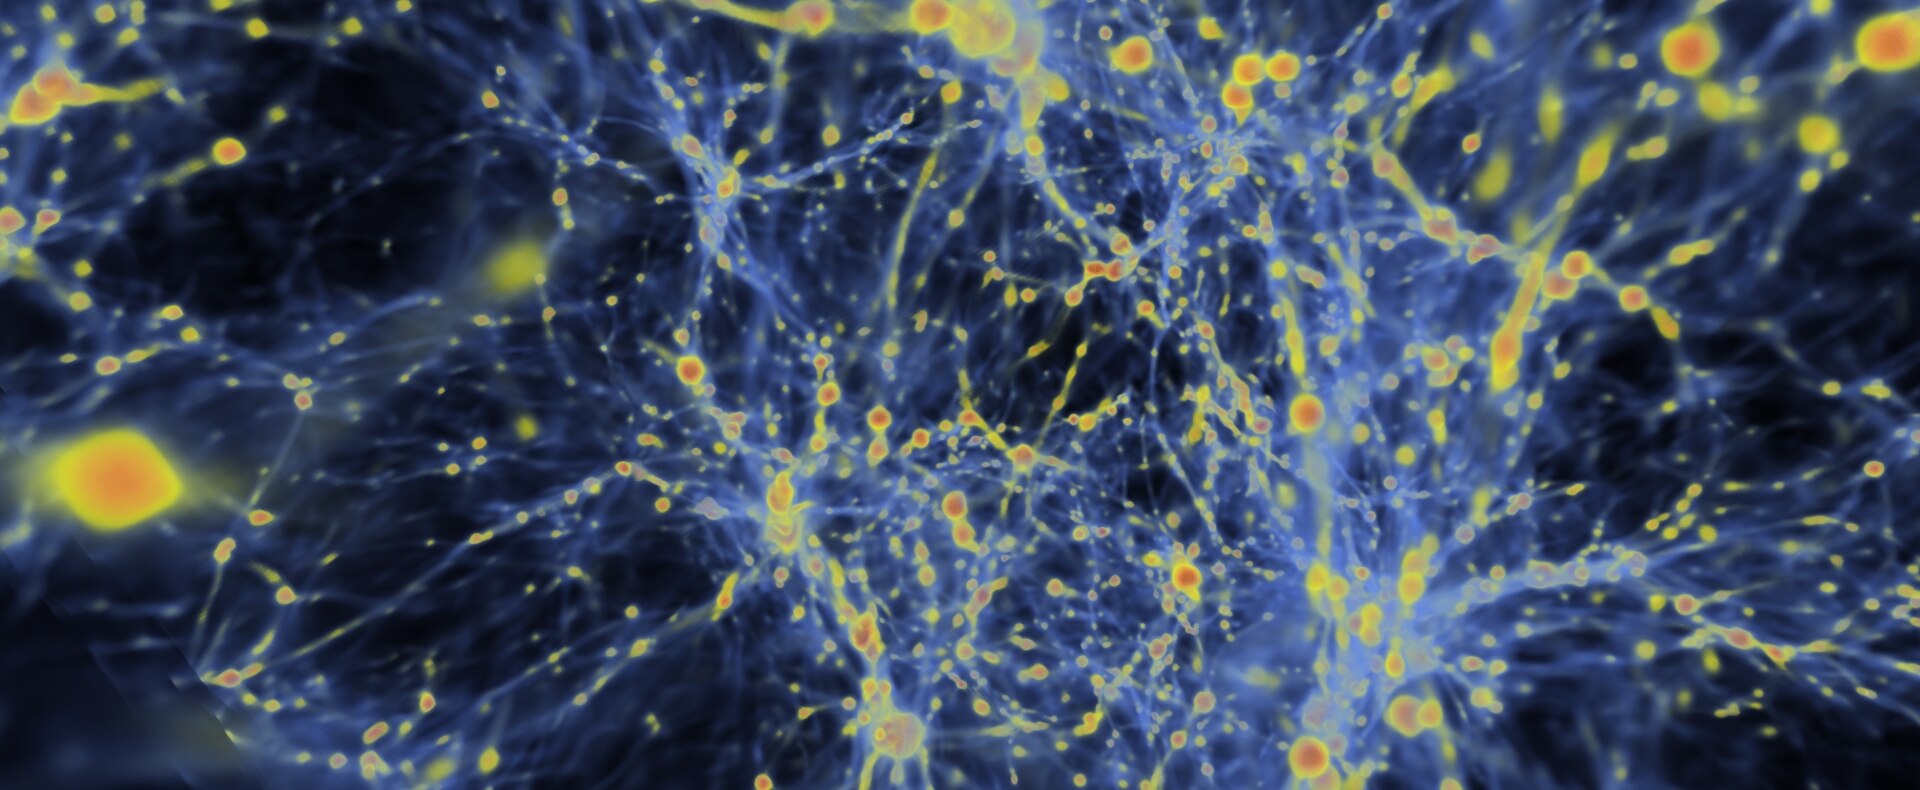 dark matter energy cosmic universe simulation bbva